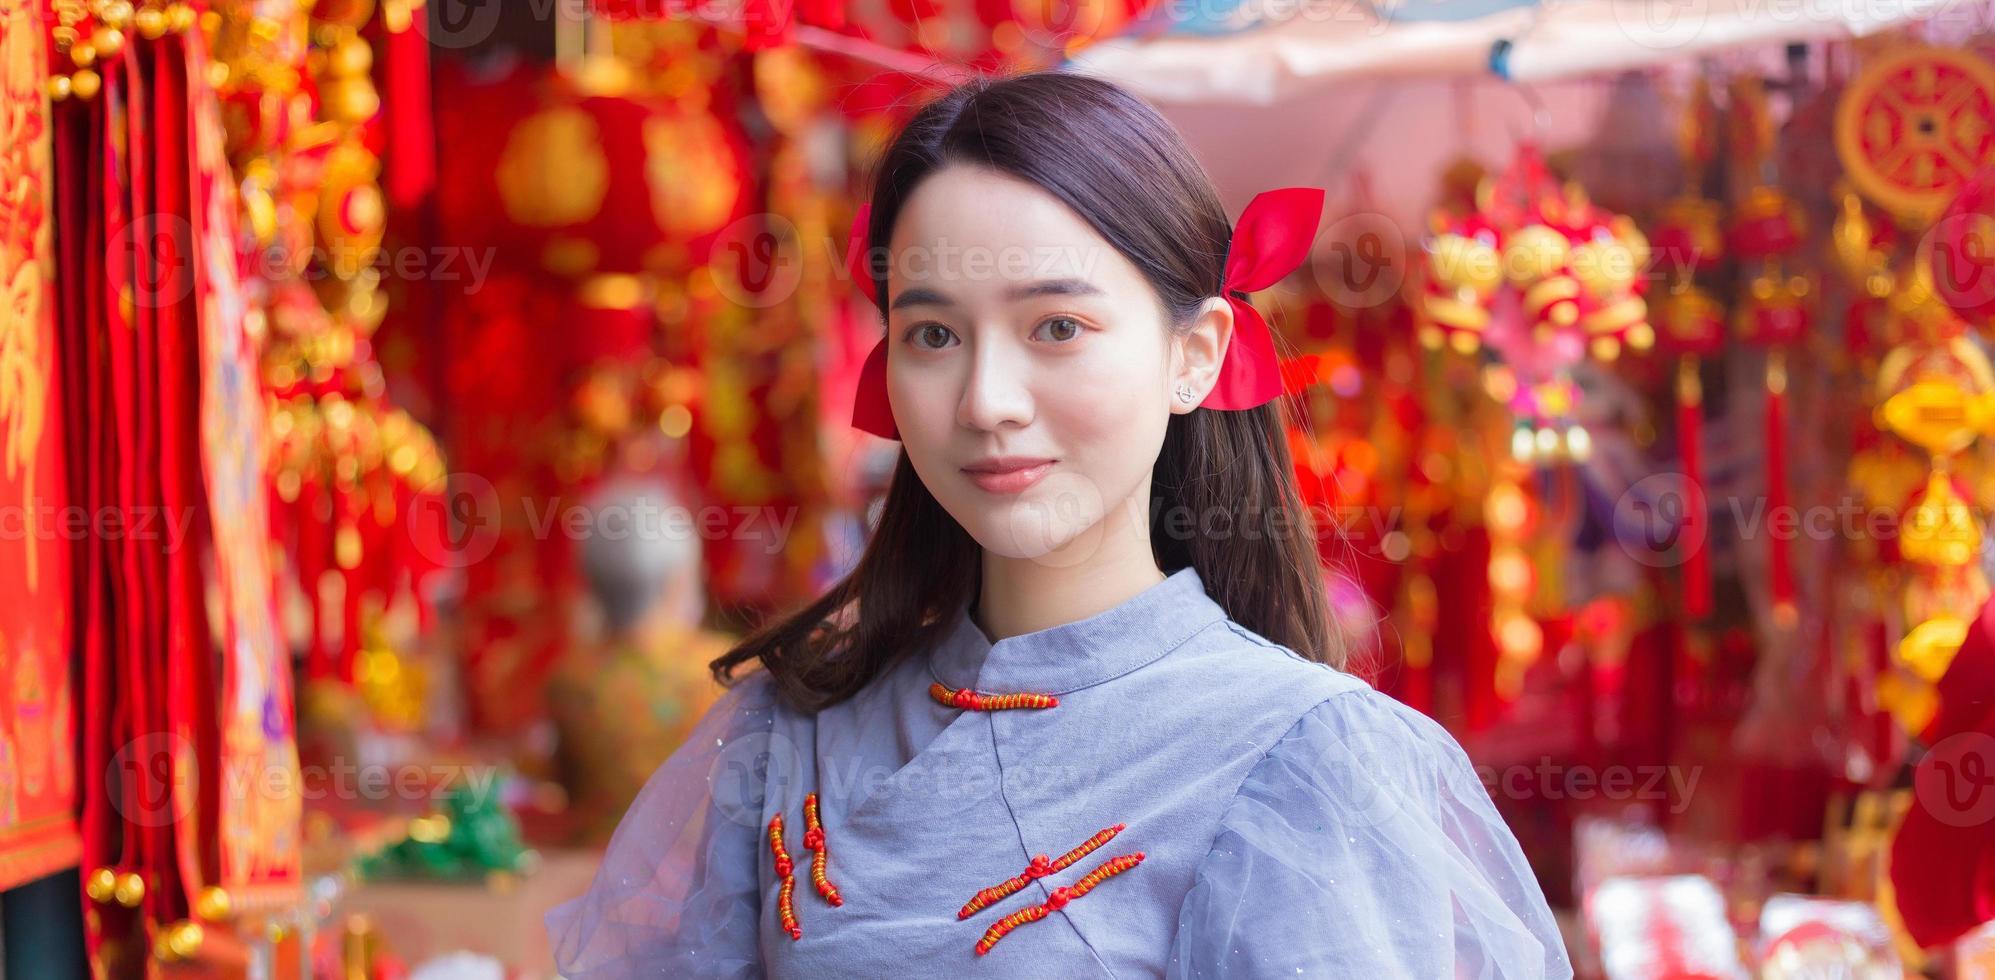 asiatisk vacker kvinna i långt hår bär en grå kinesisk klänning med kinesiskt nyårstema. foto